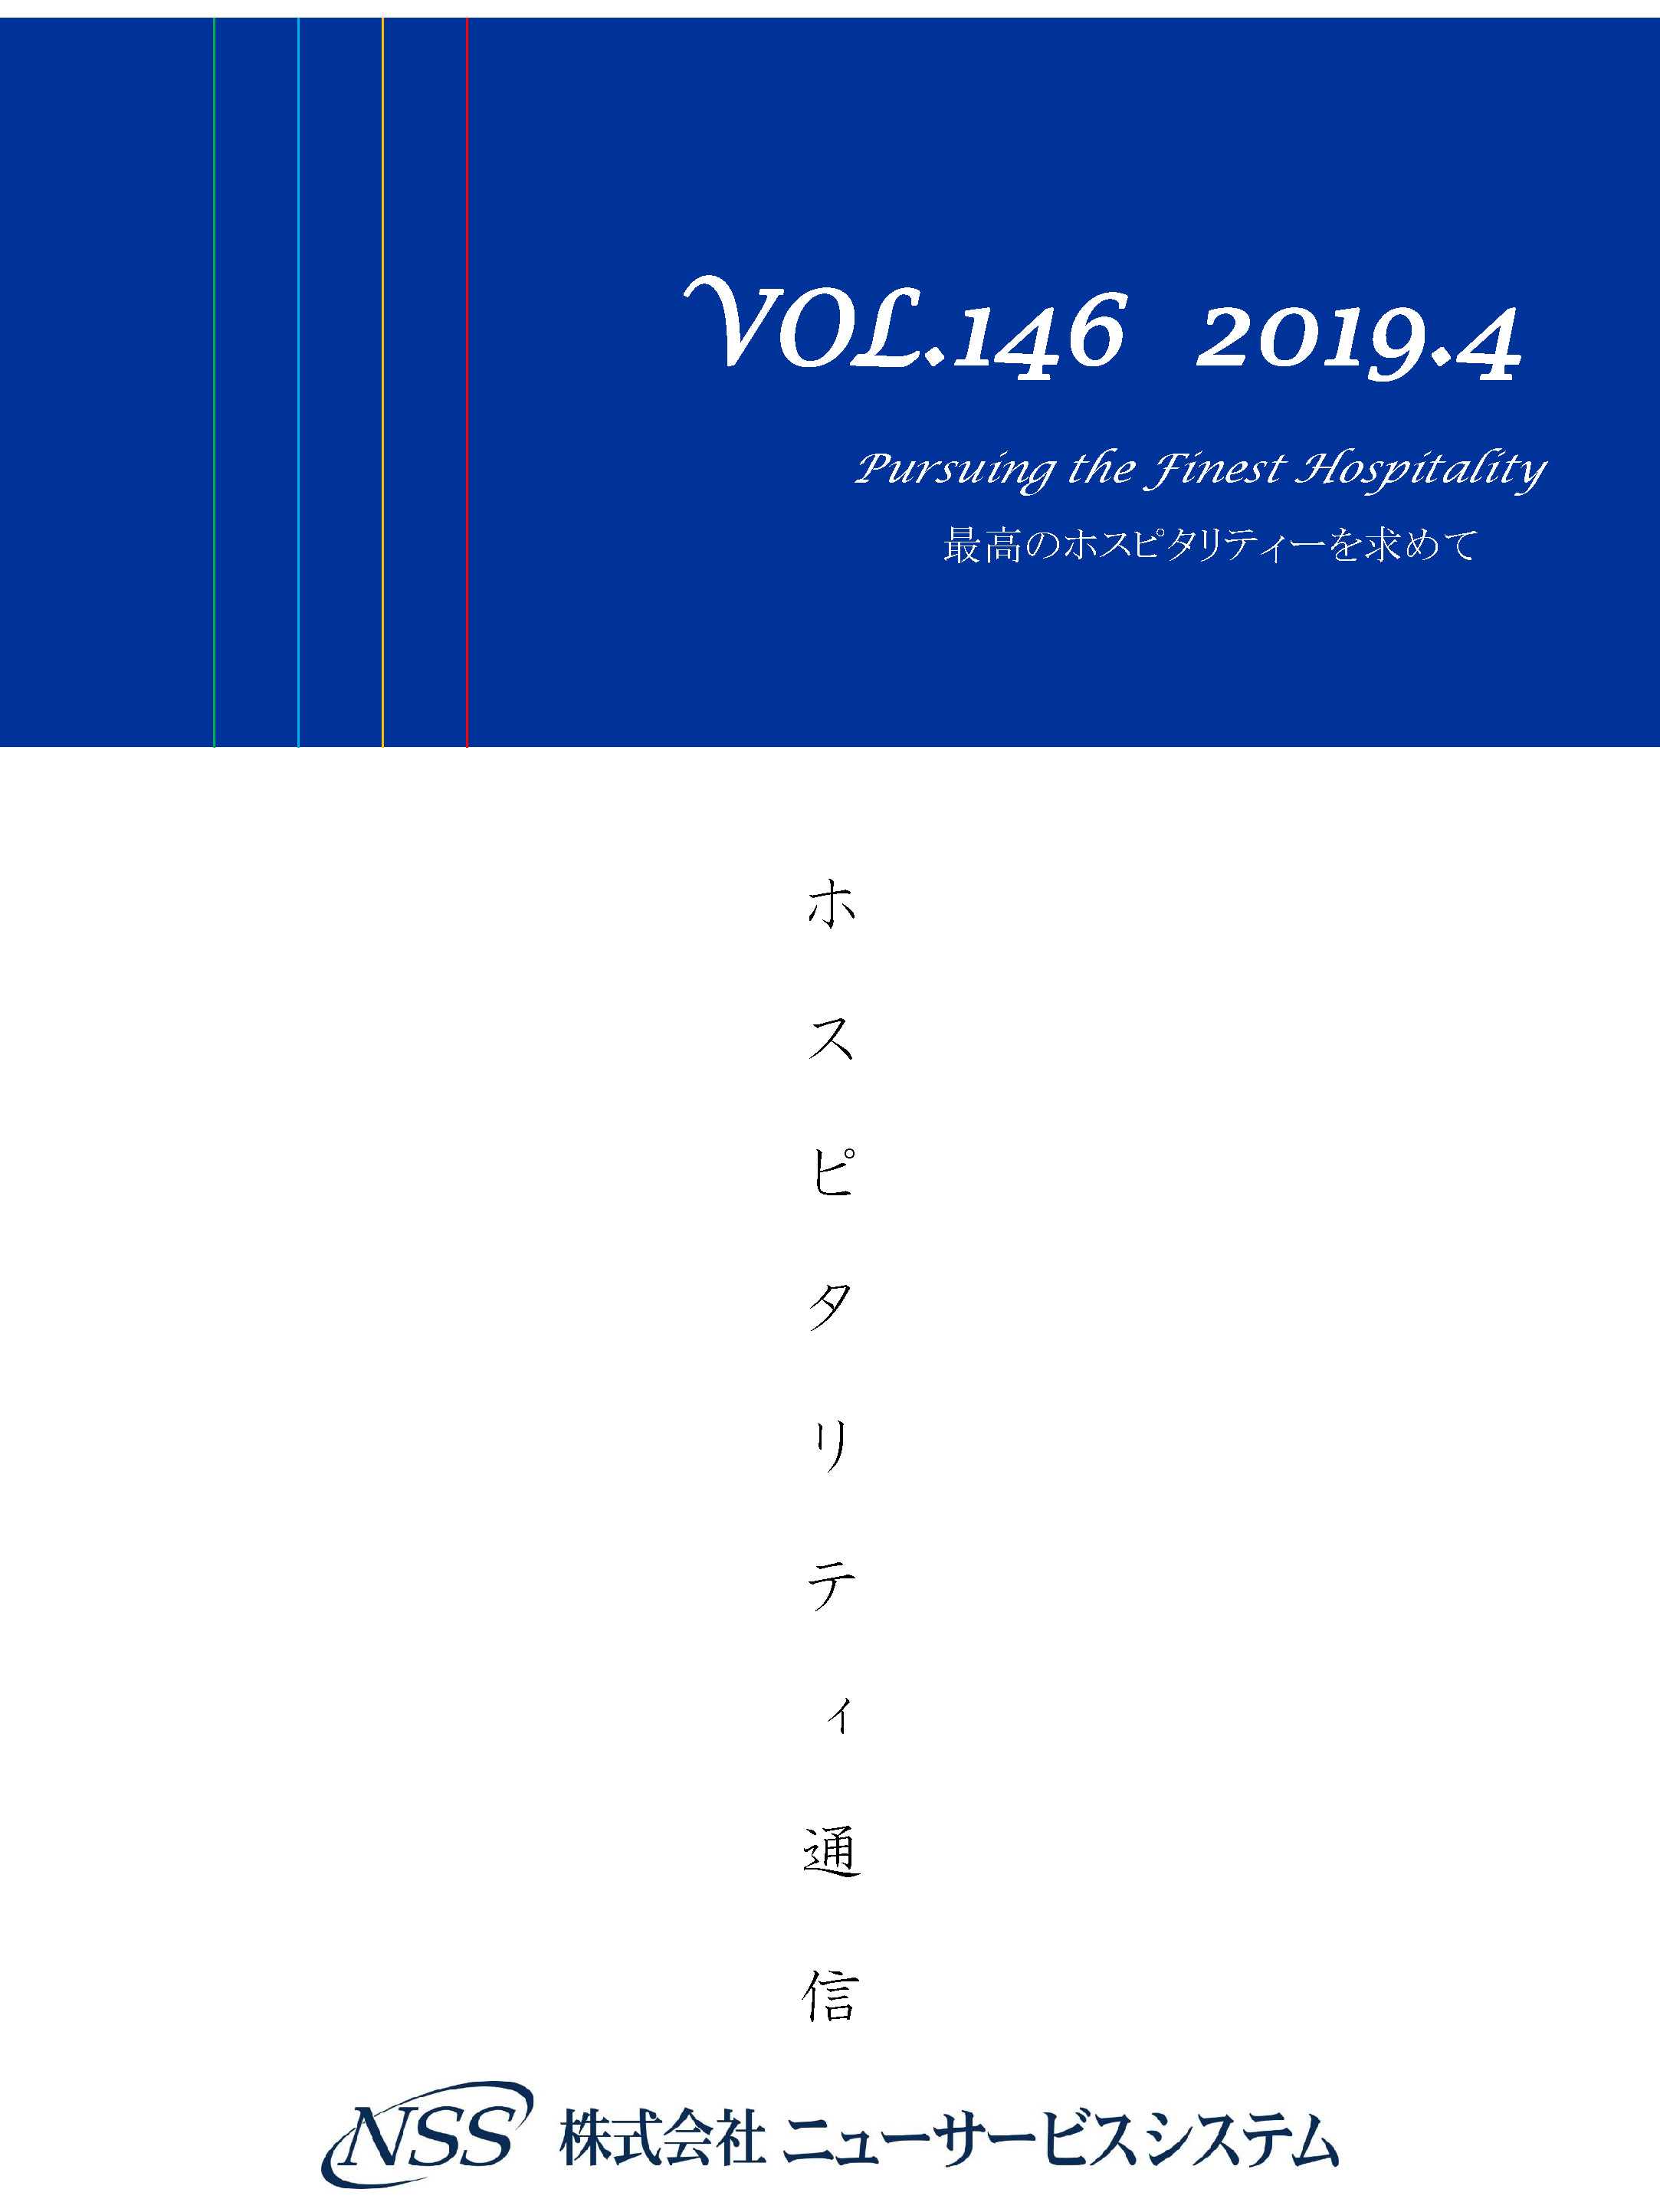 ホスピタリティ通信 vol.146